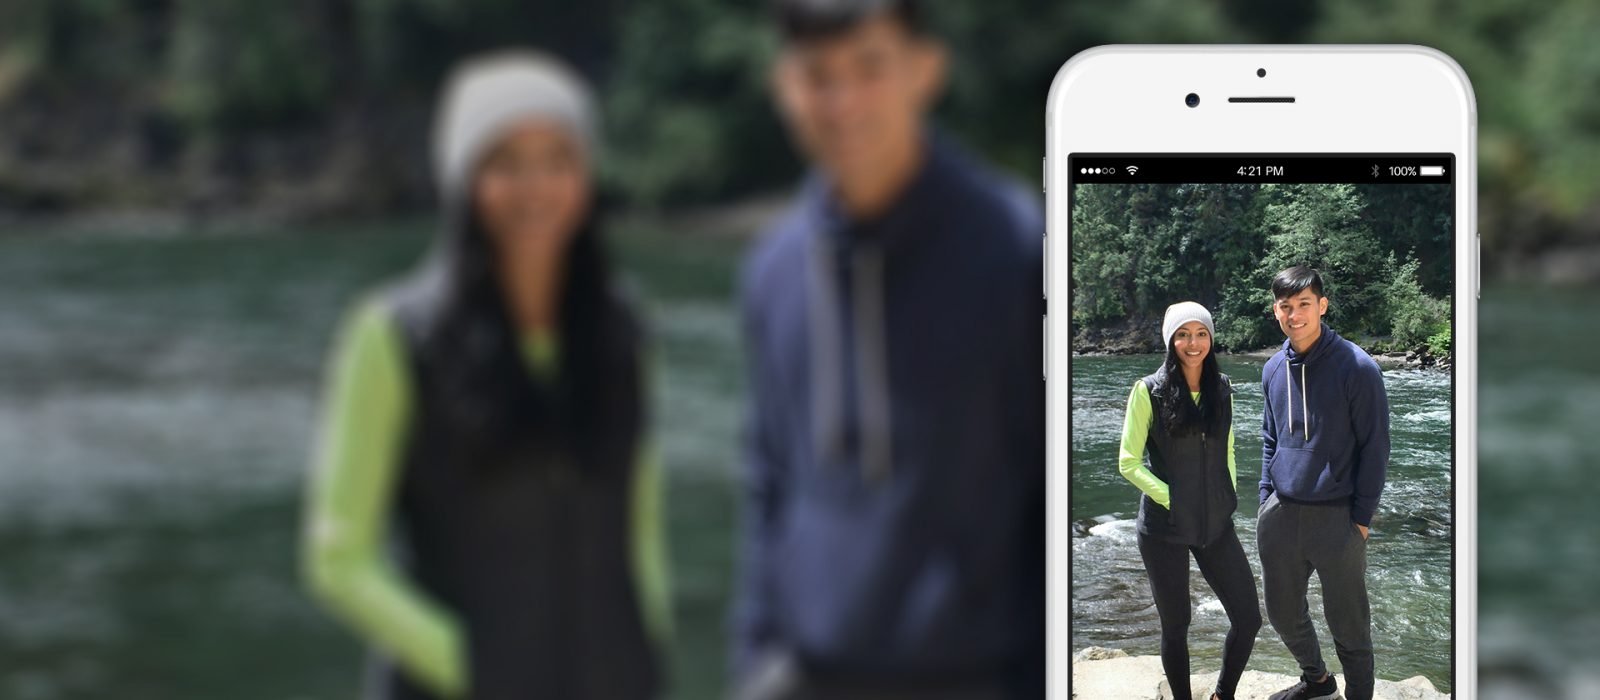 Microsoft Pix promete tirar fotos melhores que o app nativo do iPhone